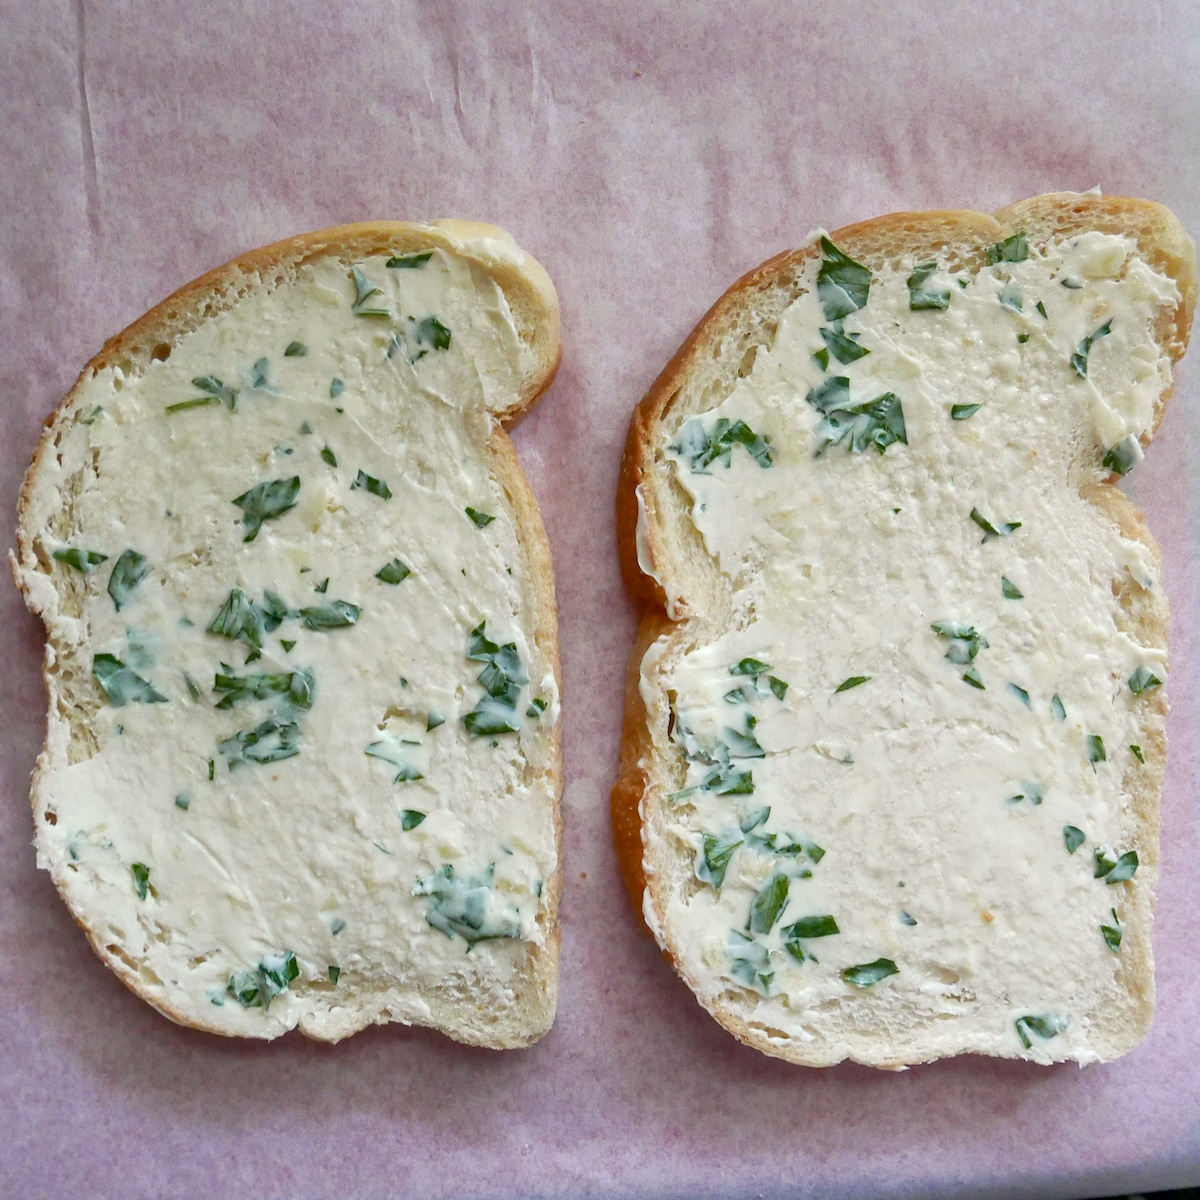 parsley butter on sourdough bread.